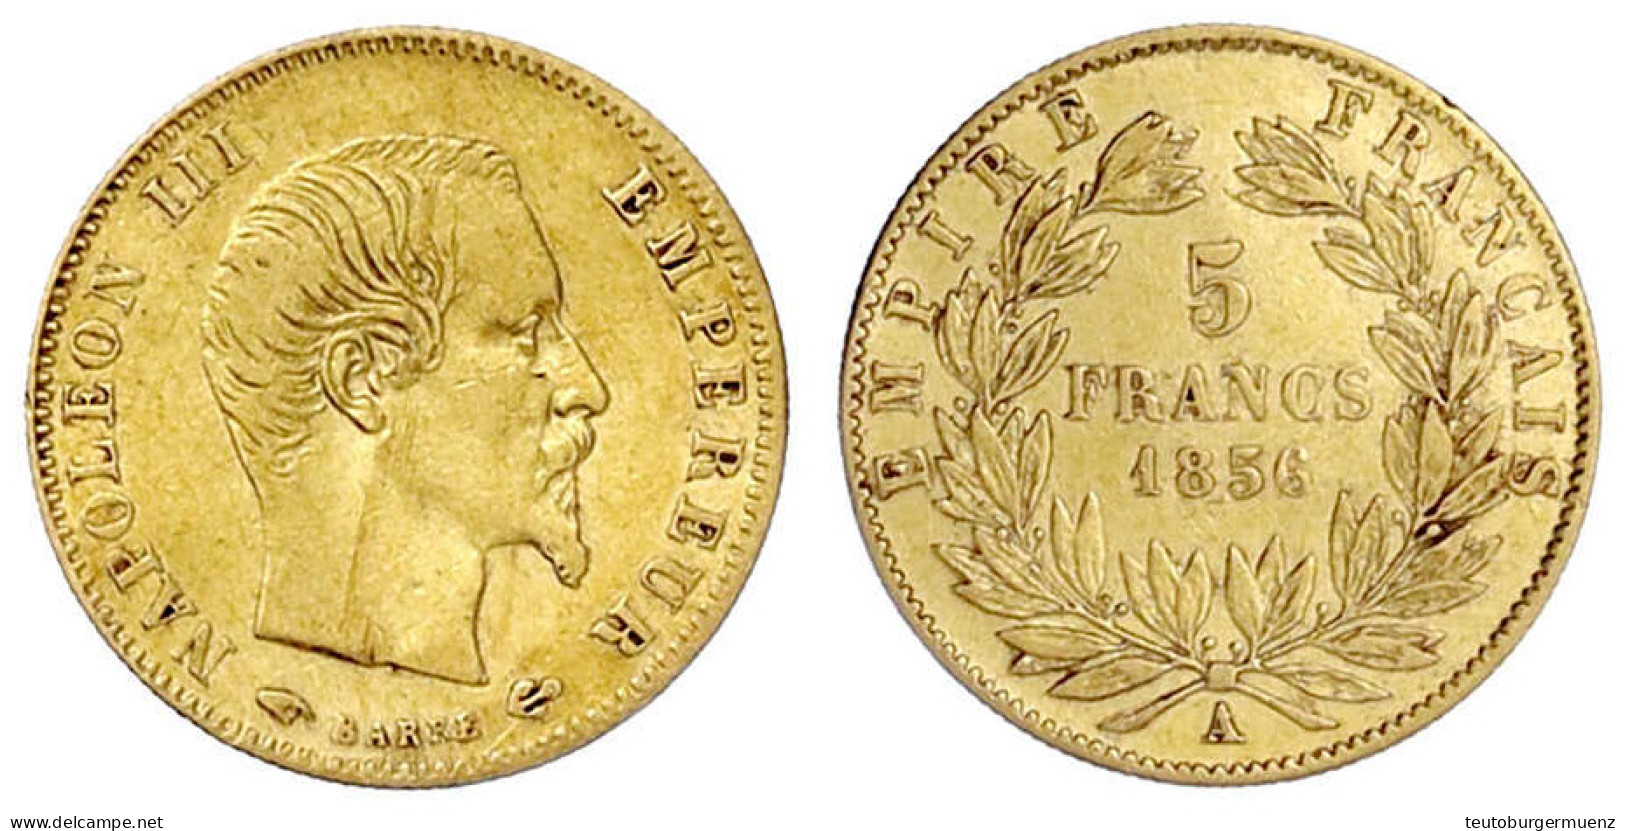 5 Francs 1856 A, Paris. 1,61 G. 900/1000. Fast Sehr Schön. Gadoury 1001. - 5 Francs (gold)